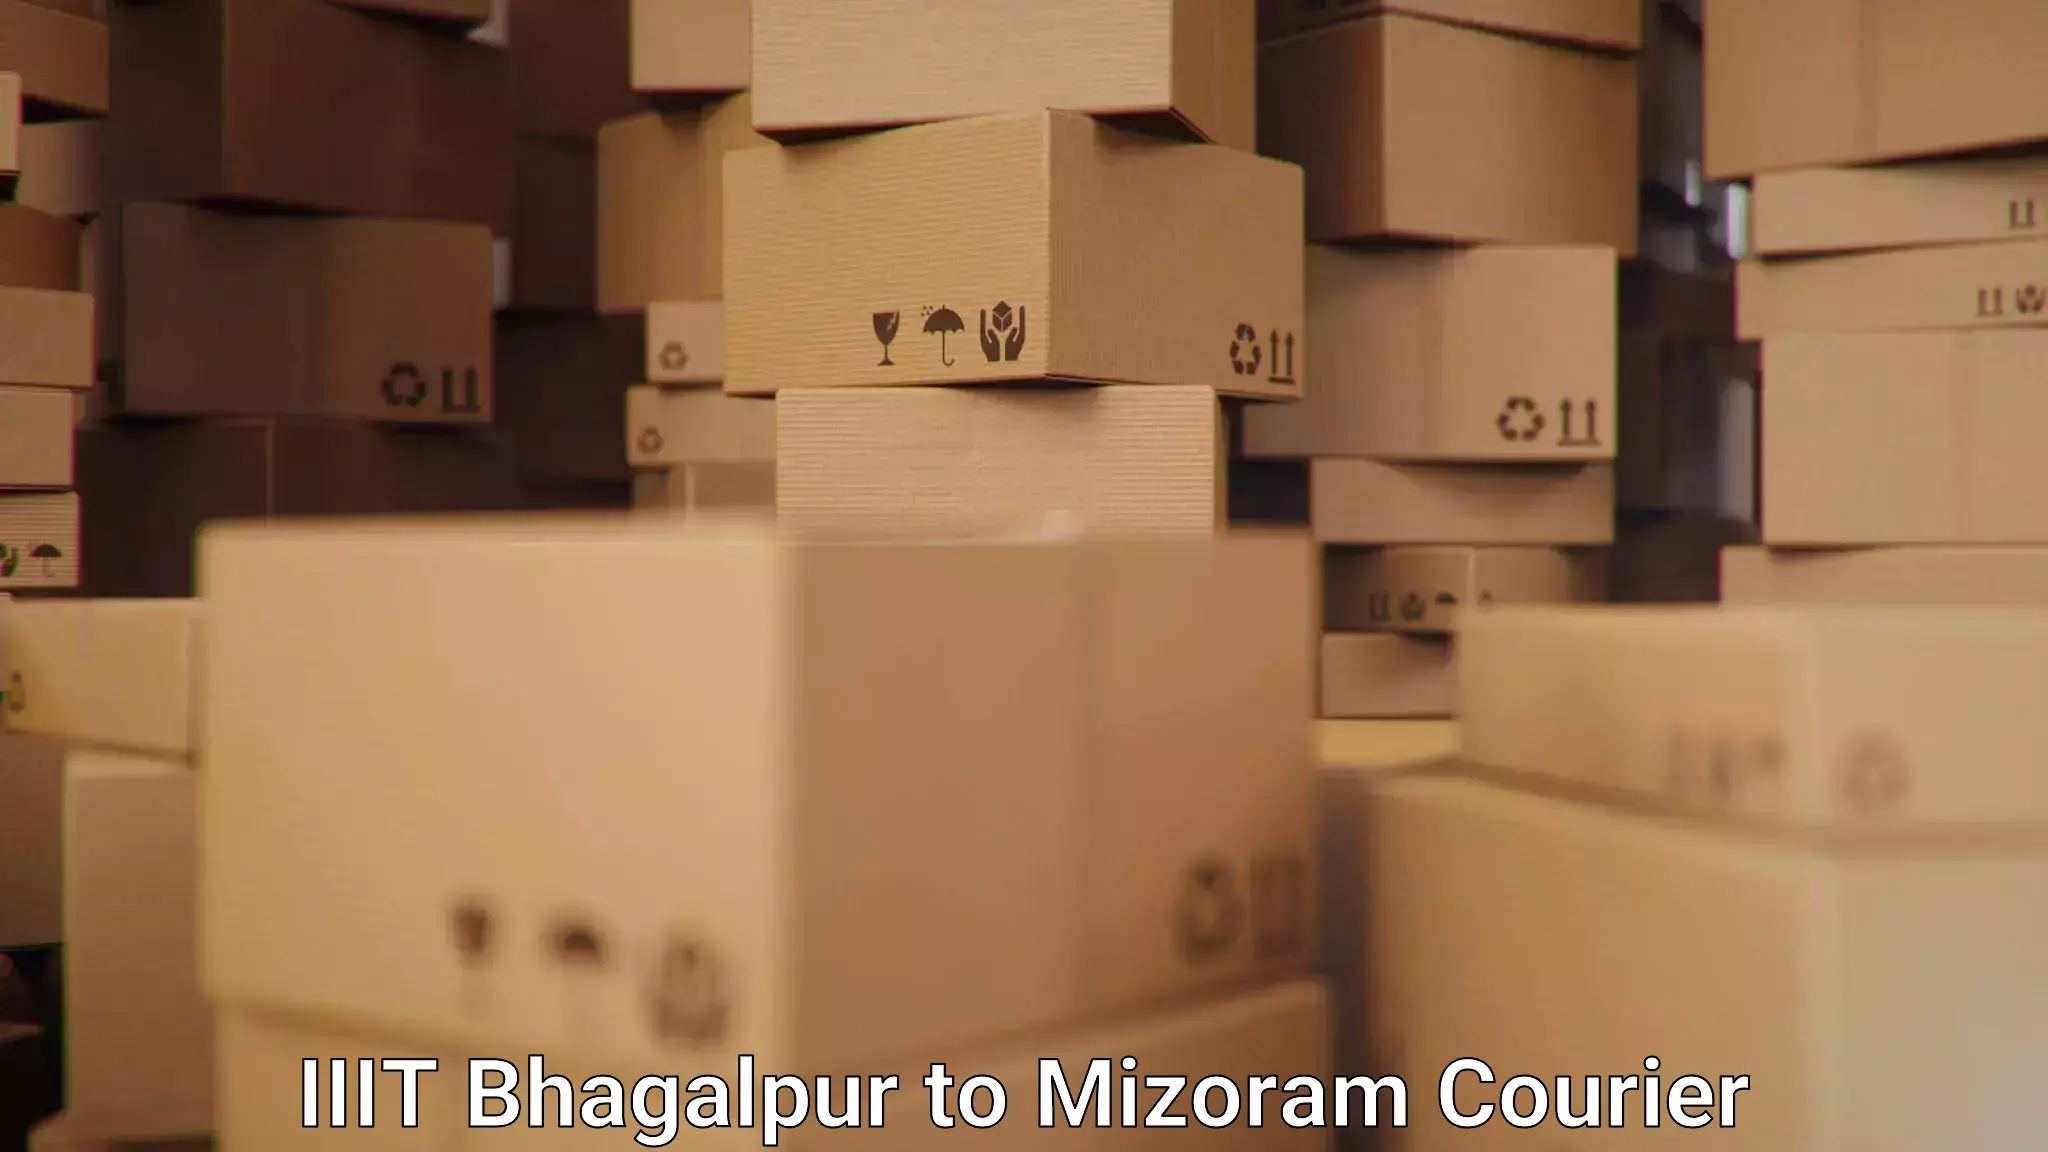 Lightweight courier IIIT Bhagalpur to Mizoram